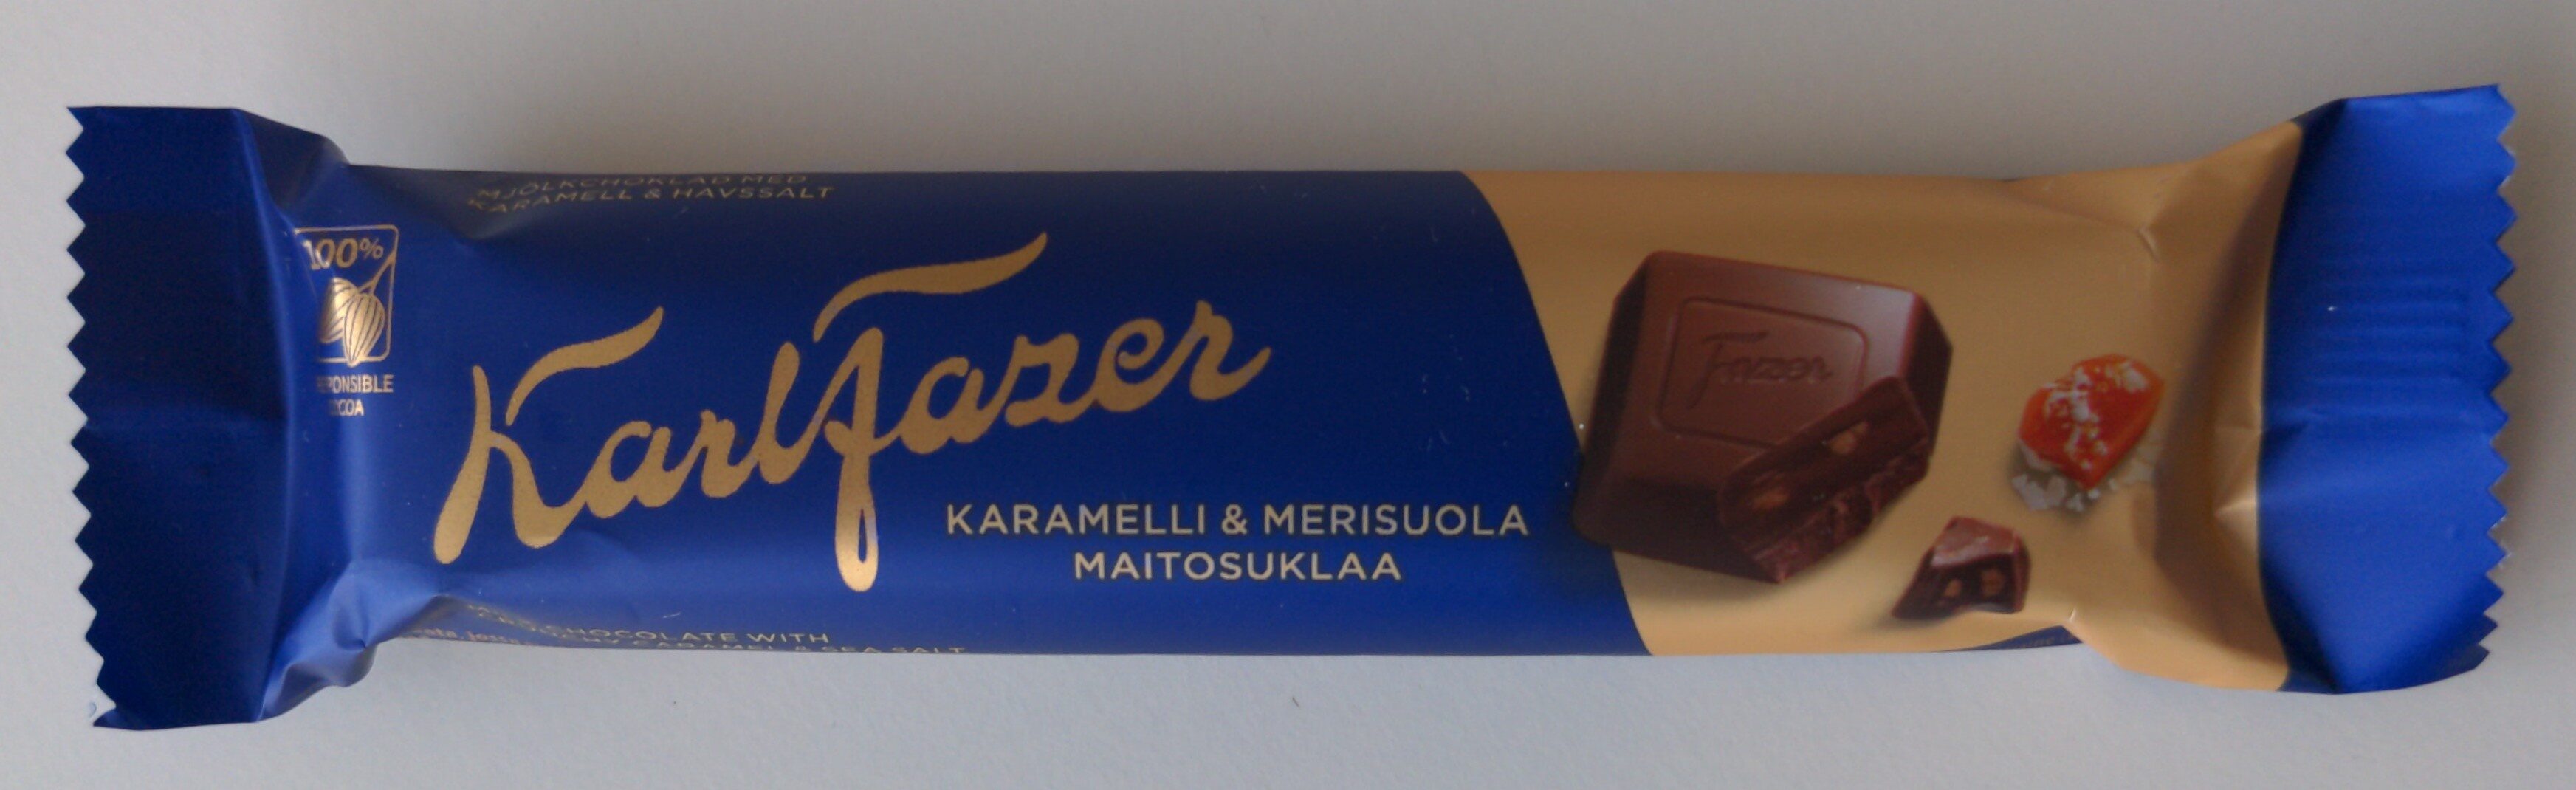 Karl Fazer karamelli & merisuola - Tuote